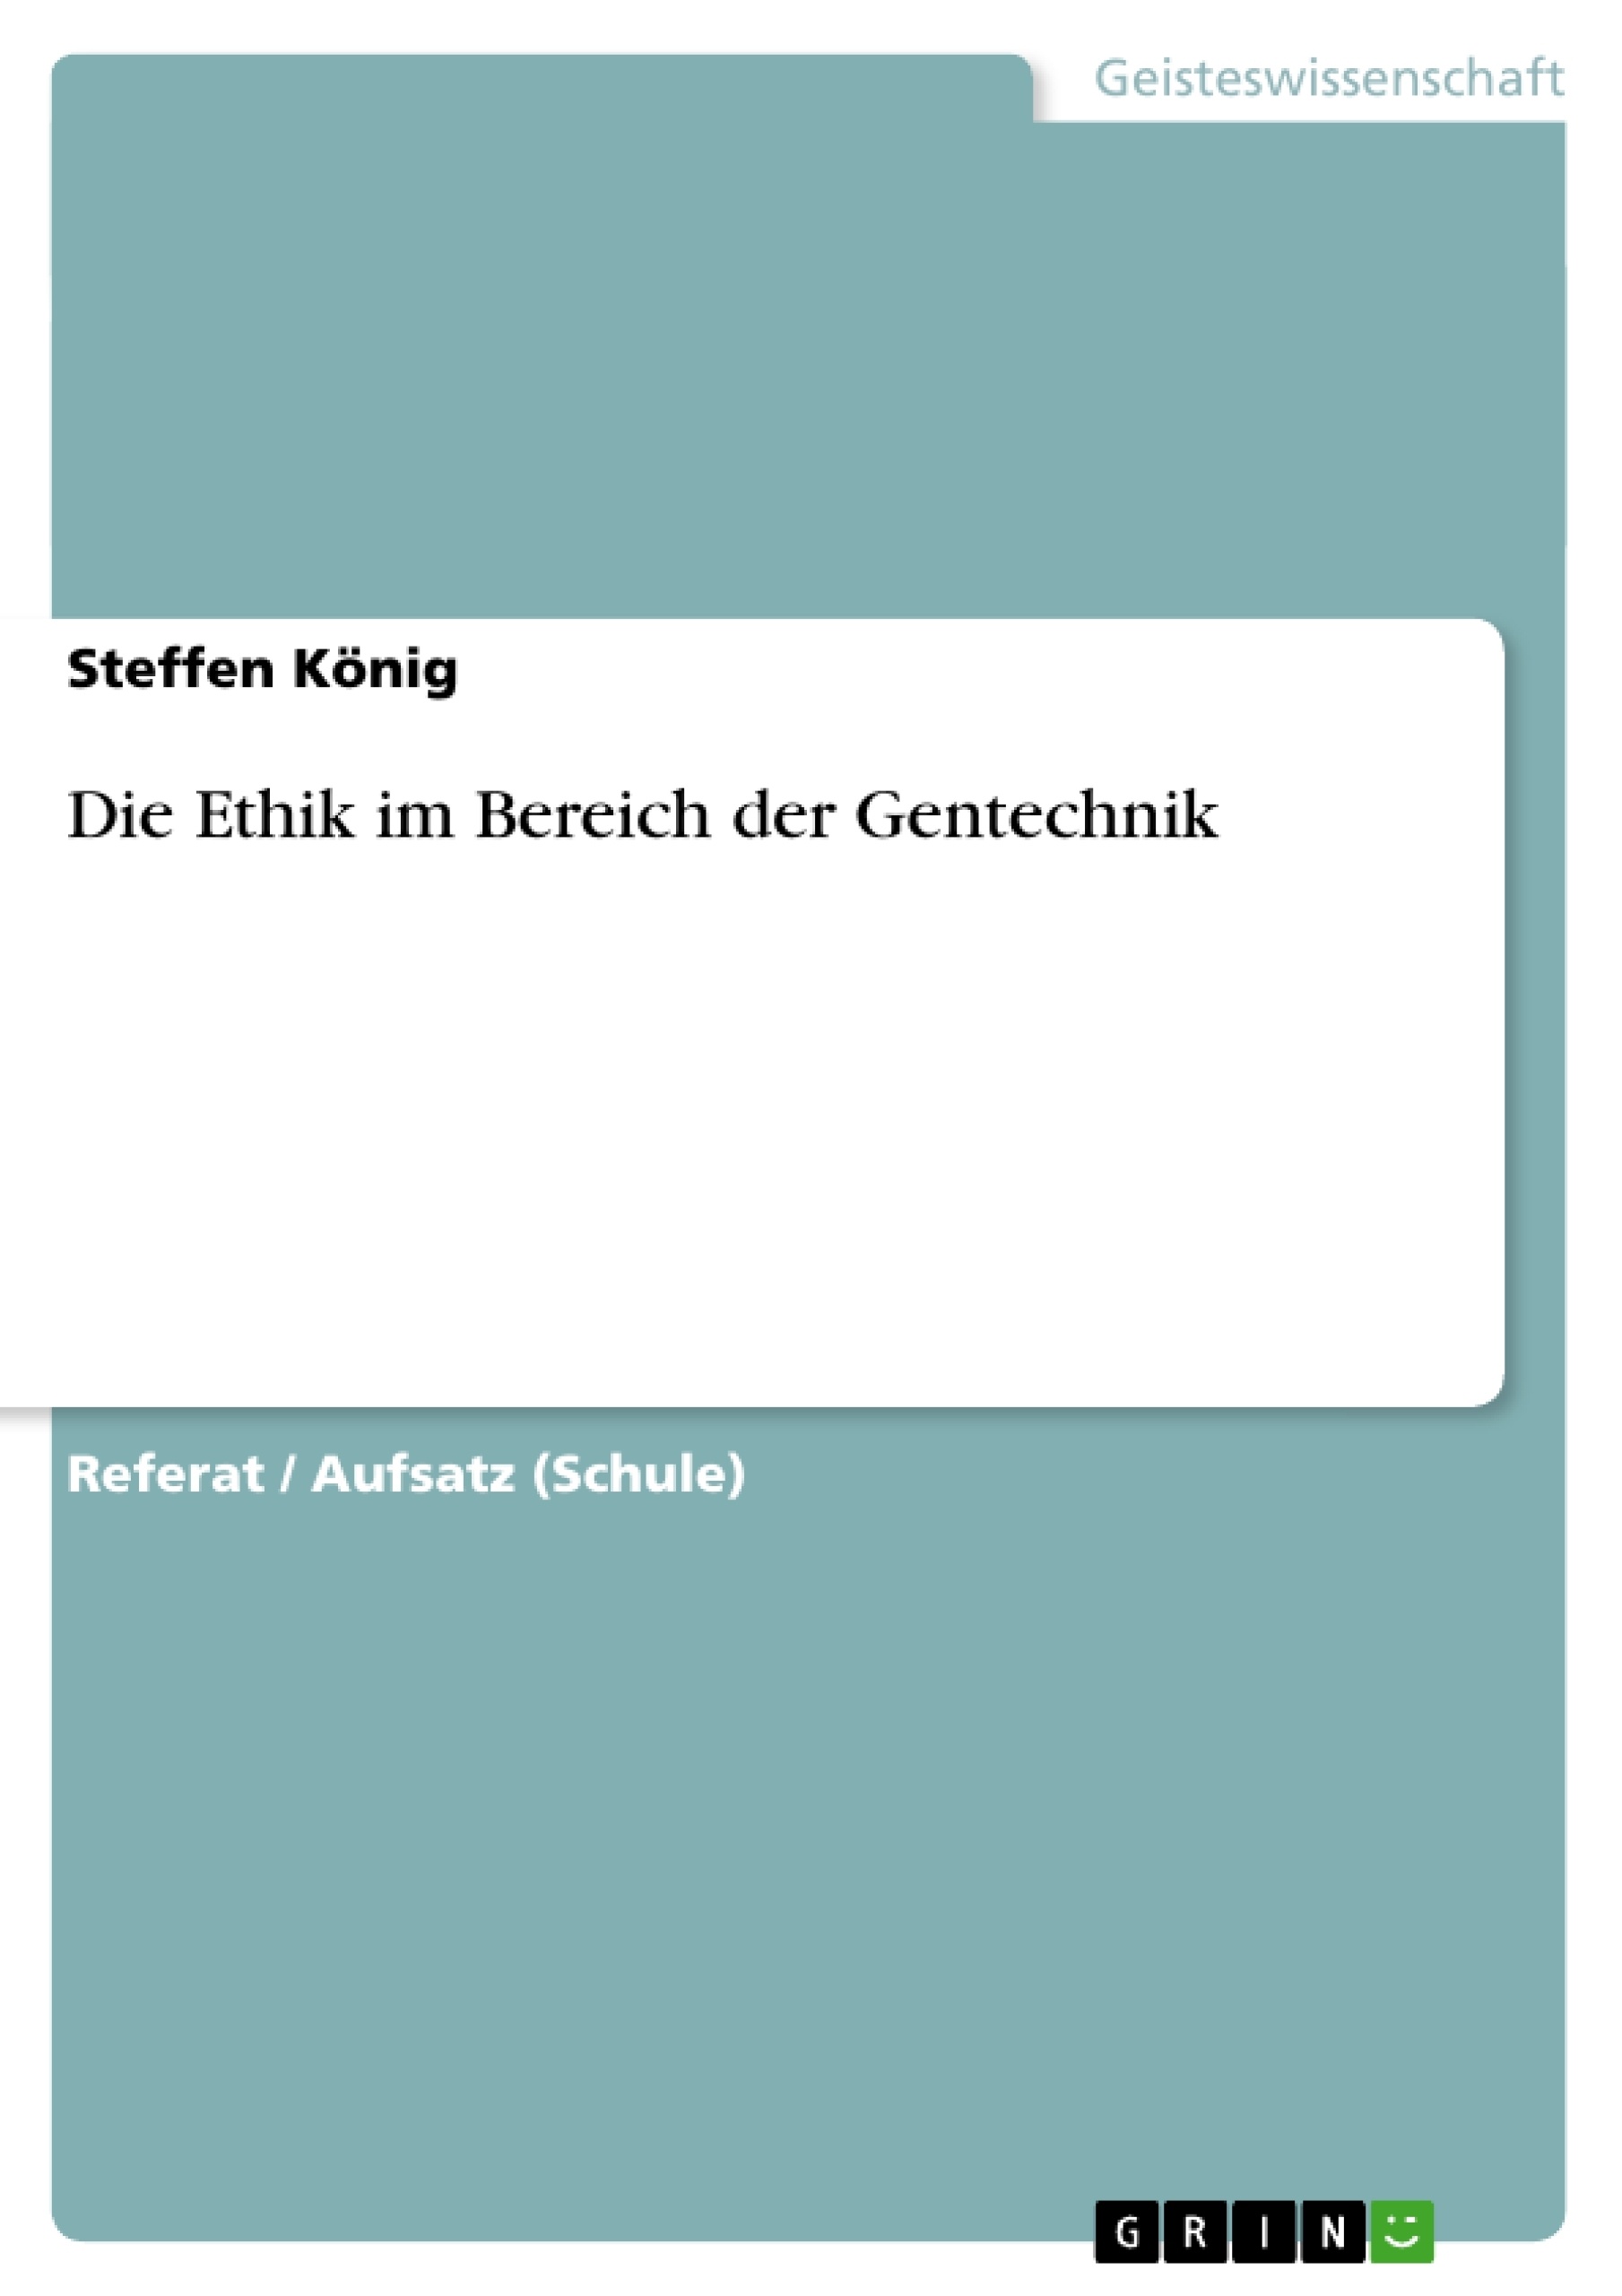 Título: Die Ethik im Bereich der Gentechnik